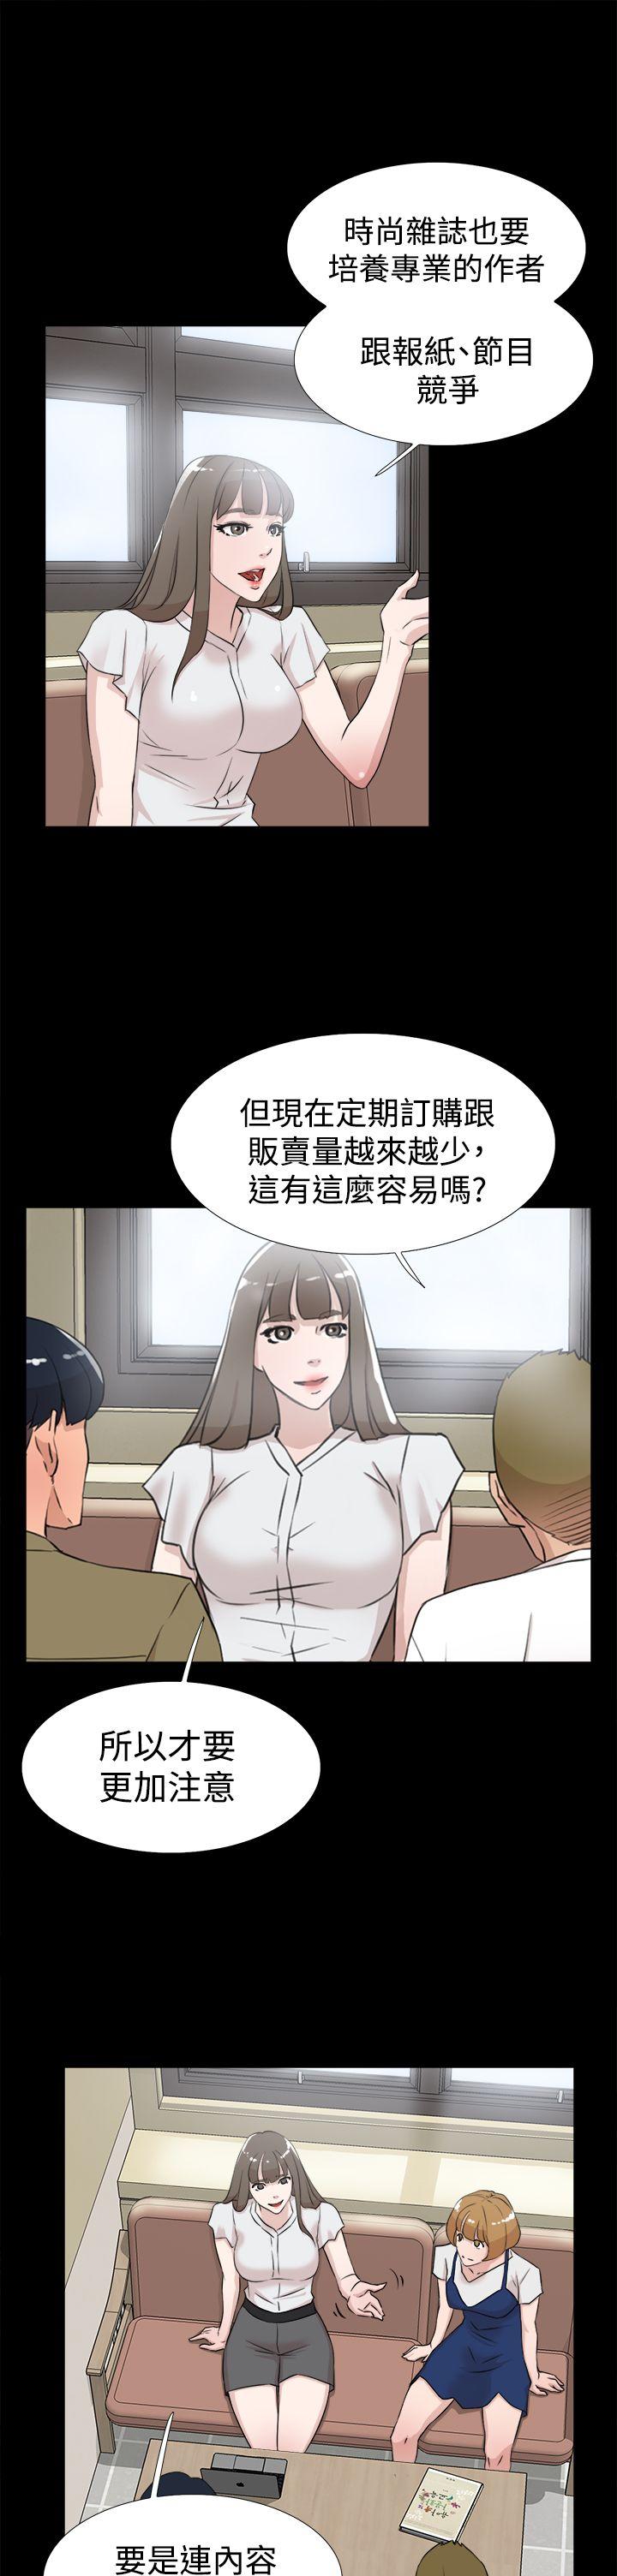 韩国污漫画 她的高跟鞋(無刪減) 第18话 7